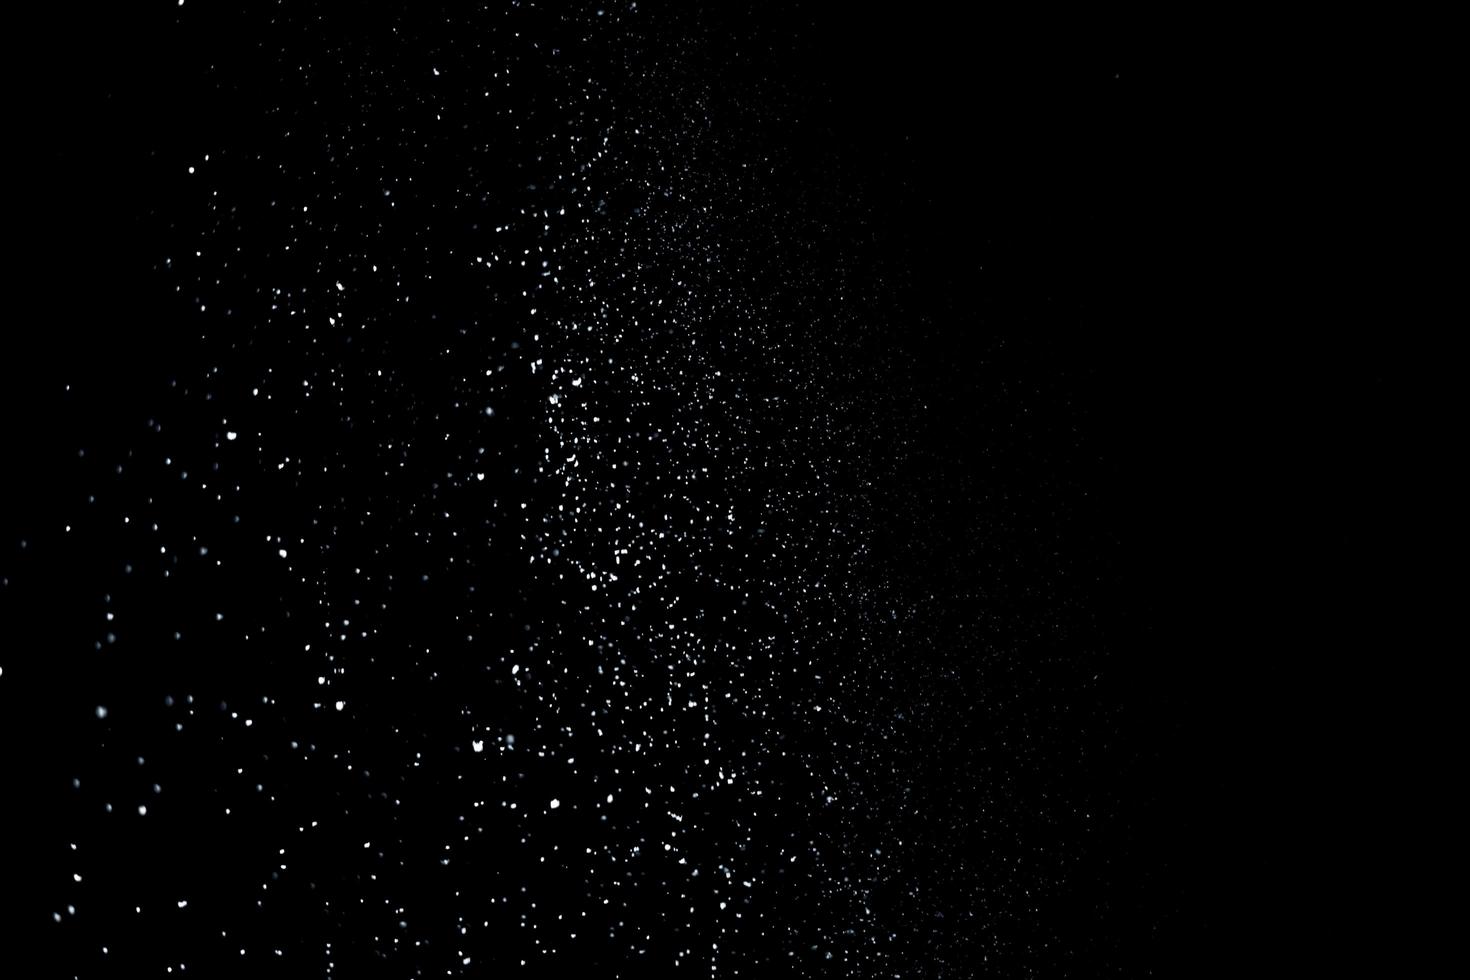 de vita partiklarna på svart bakgrund som representerar ett snöfall. snö överläggsfilmer för att ge en frys- eller vintereffekt till videopresentationen. foto